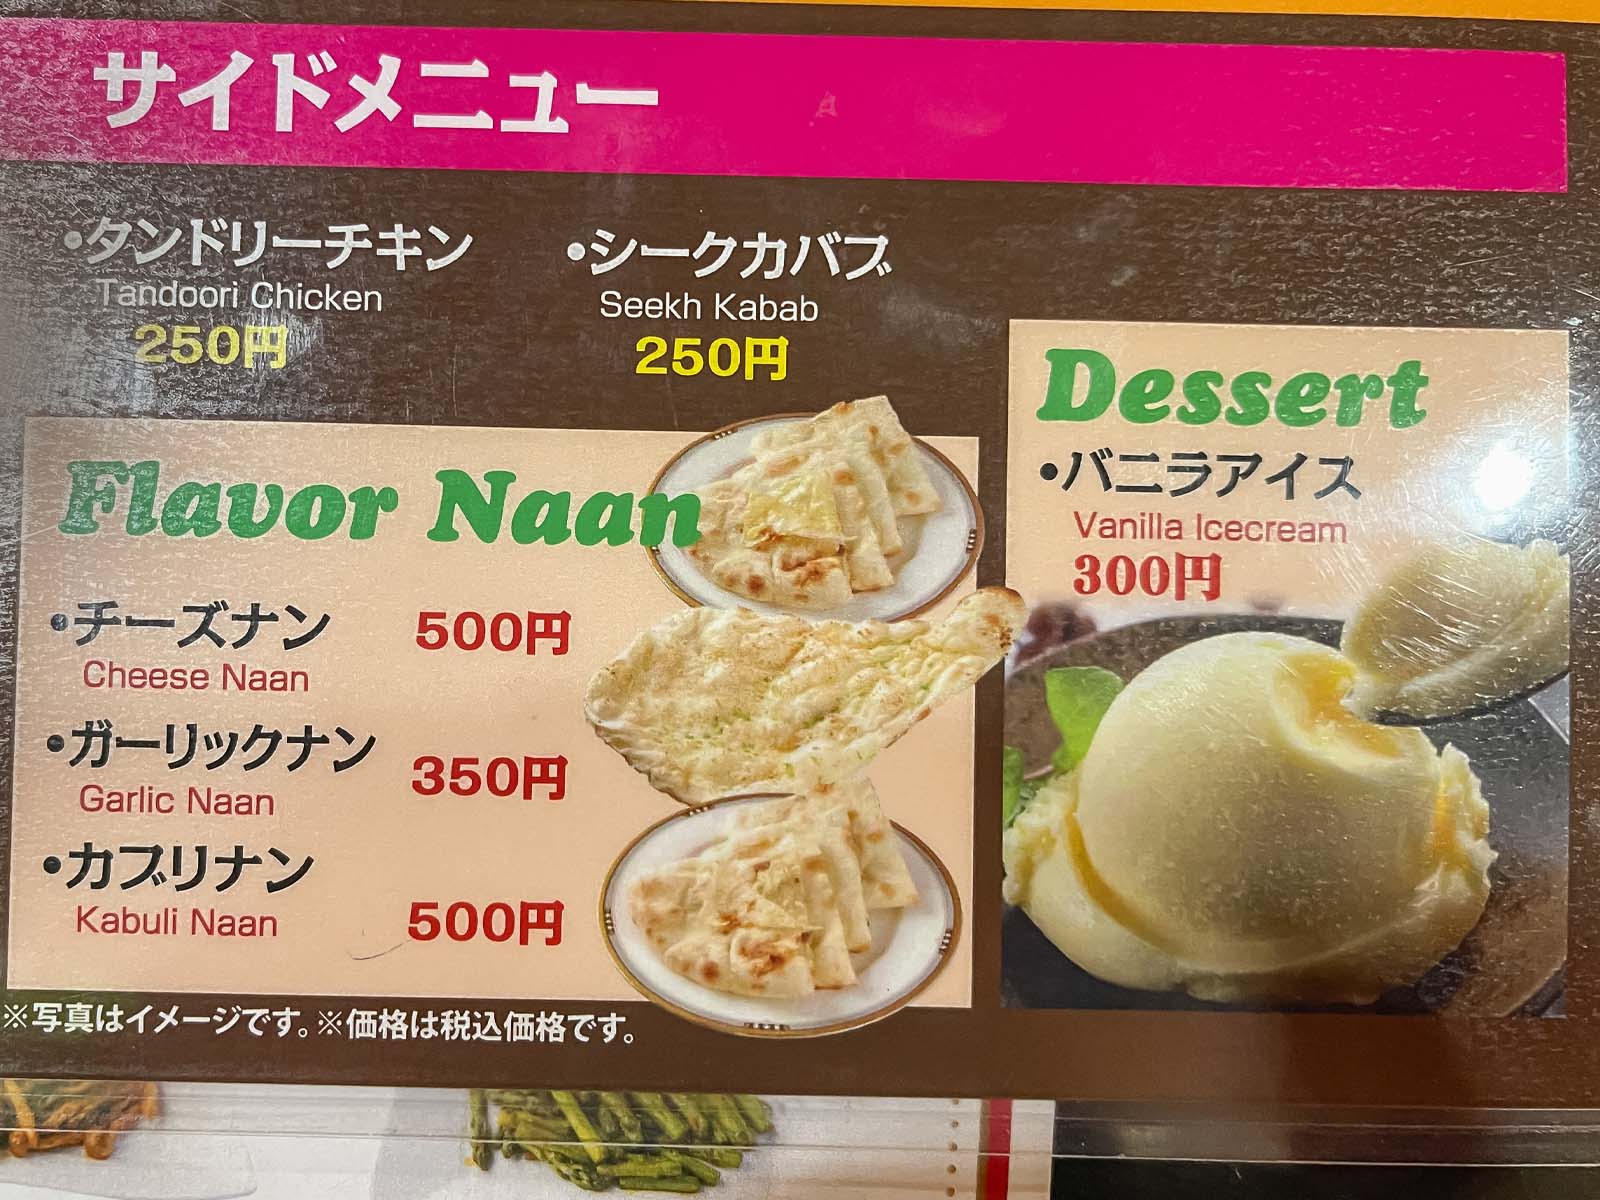 ハーブスパイスキッチンでマトンカレー、バターチキンカレー、タンドリーチキン食べた！／横浜馬車道